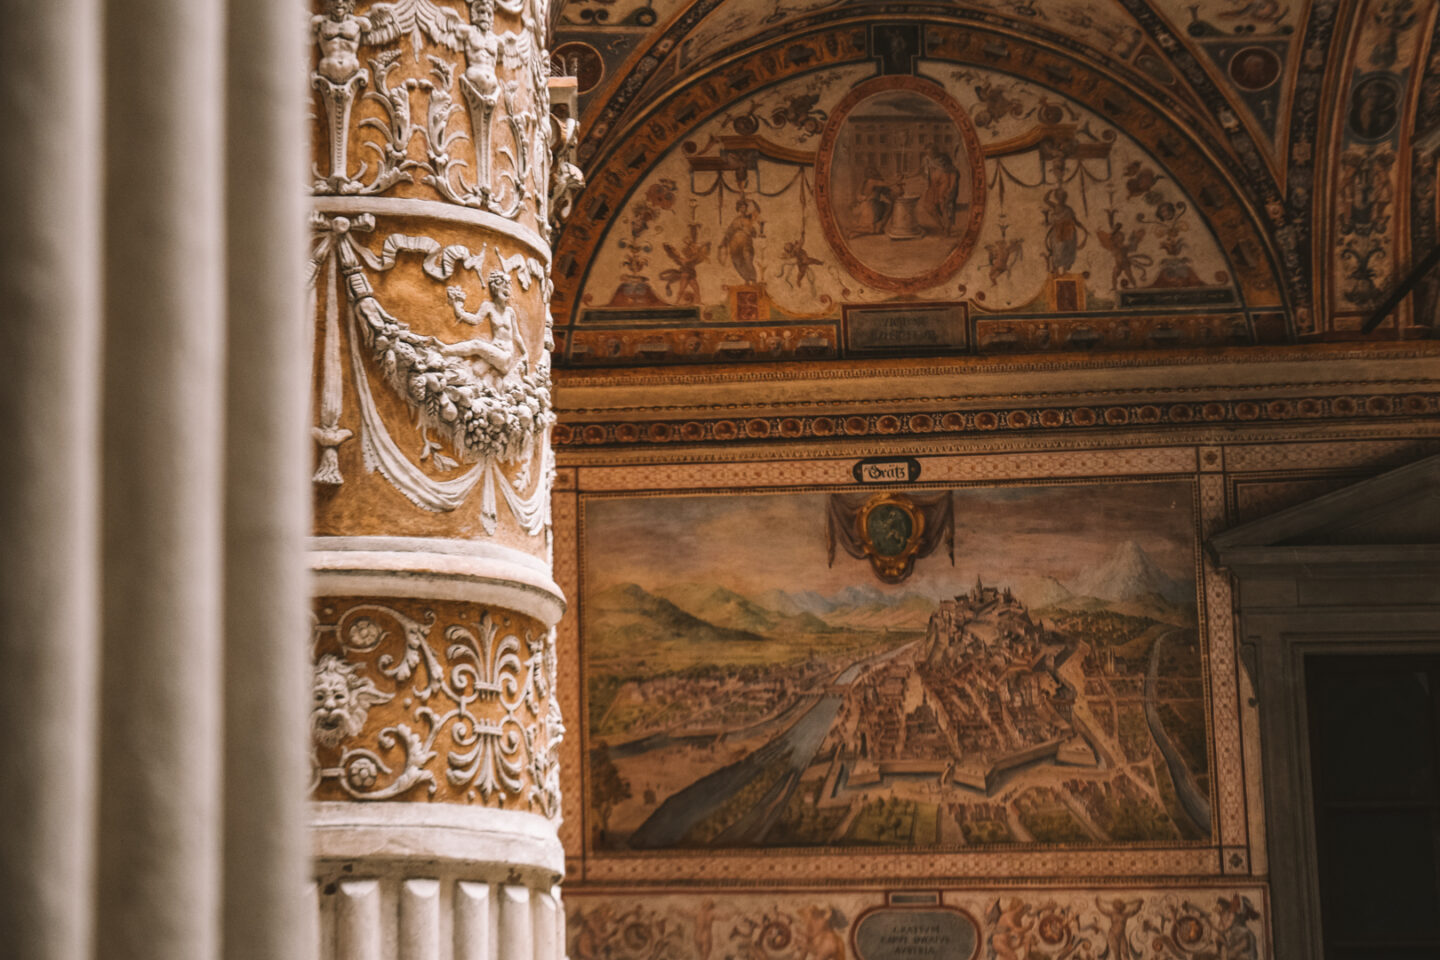 The art at Palazzo Vecchio